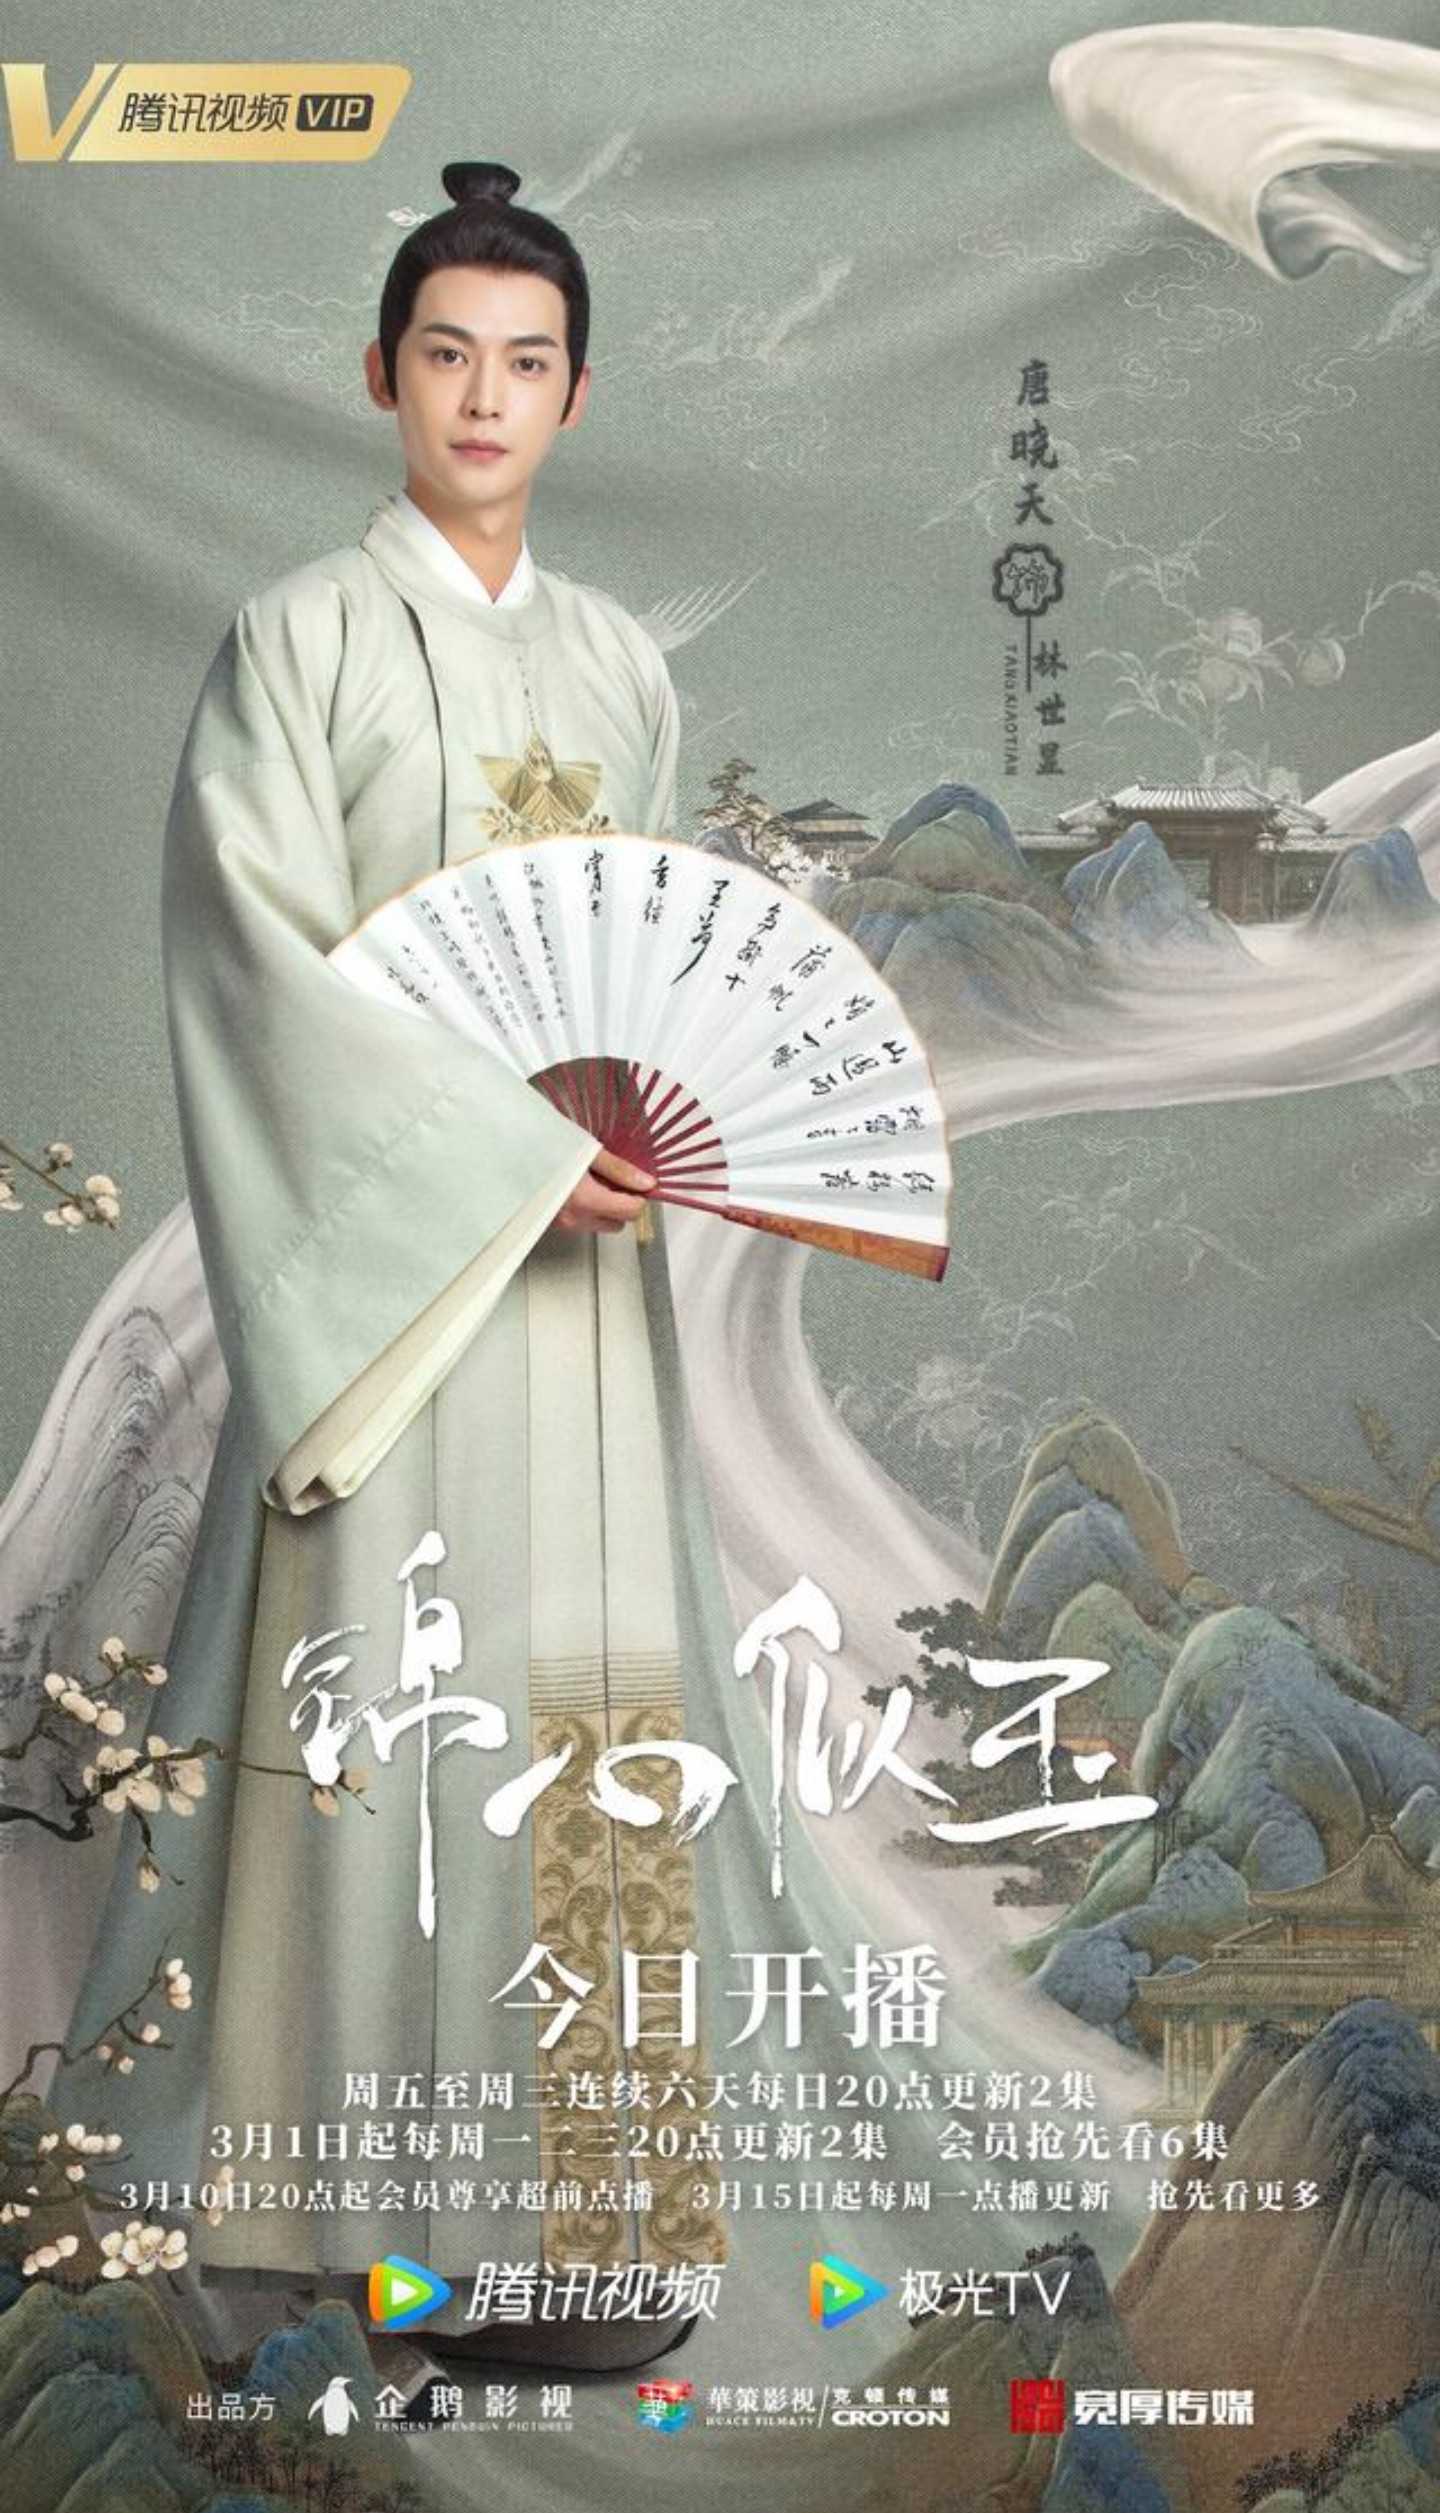 完成品 中国ドラマ 「錦心似玉」恋心は玉の如き | www.emrnews.com